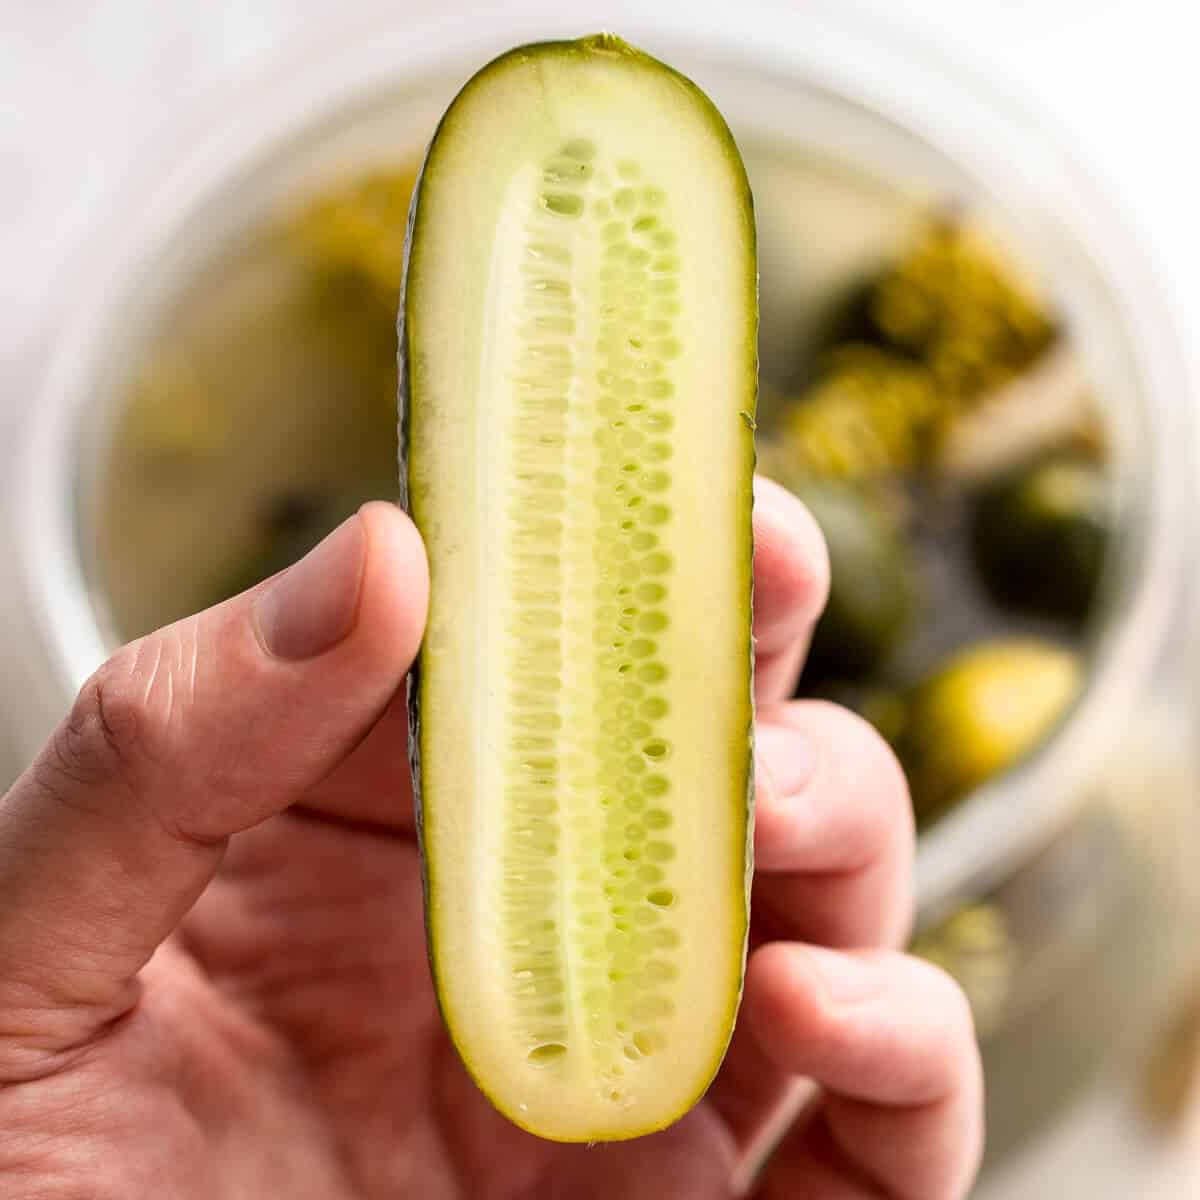 fermented cucumber cut in half